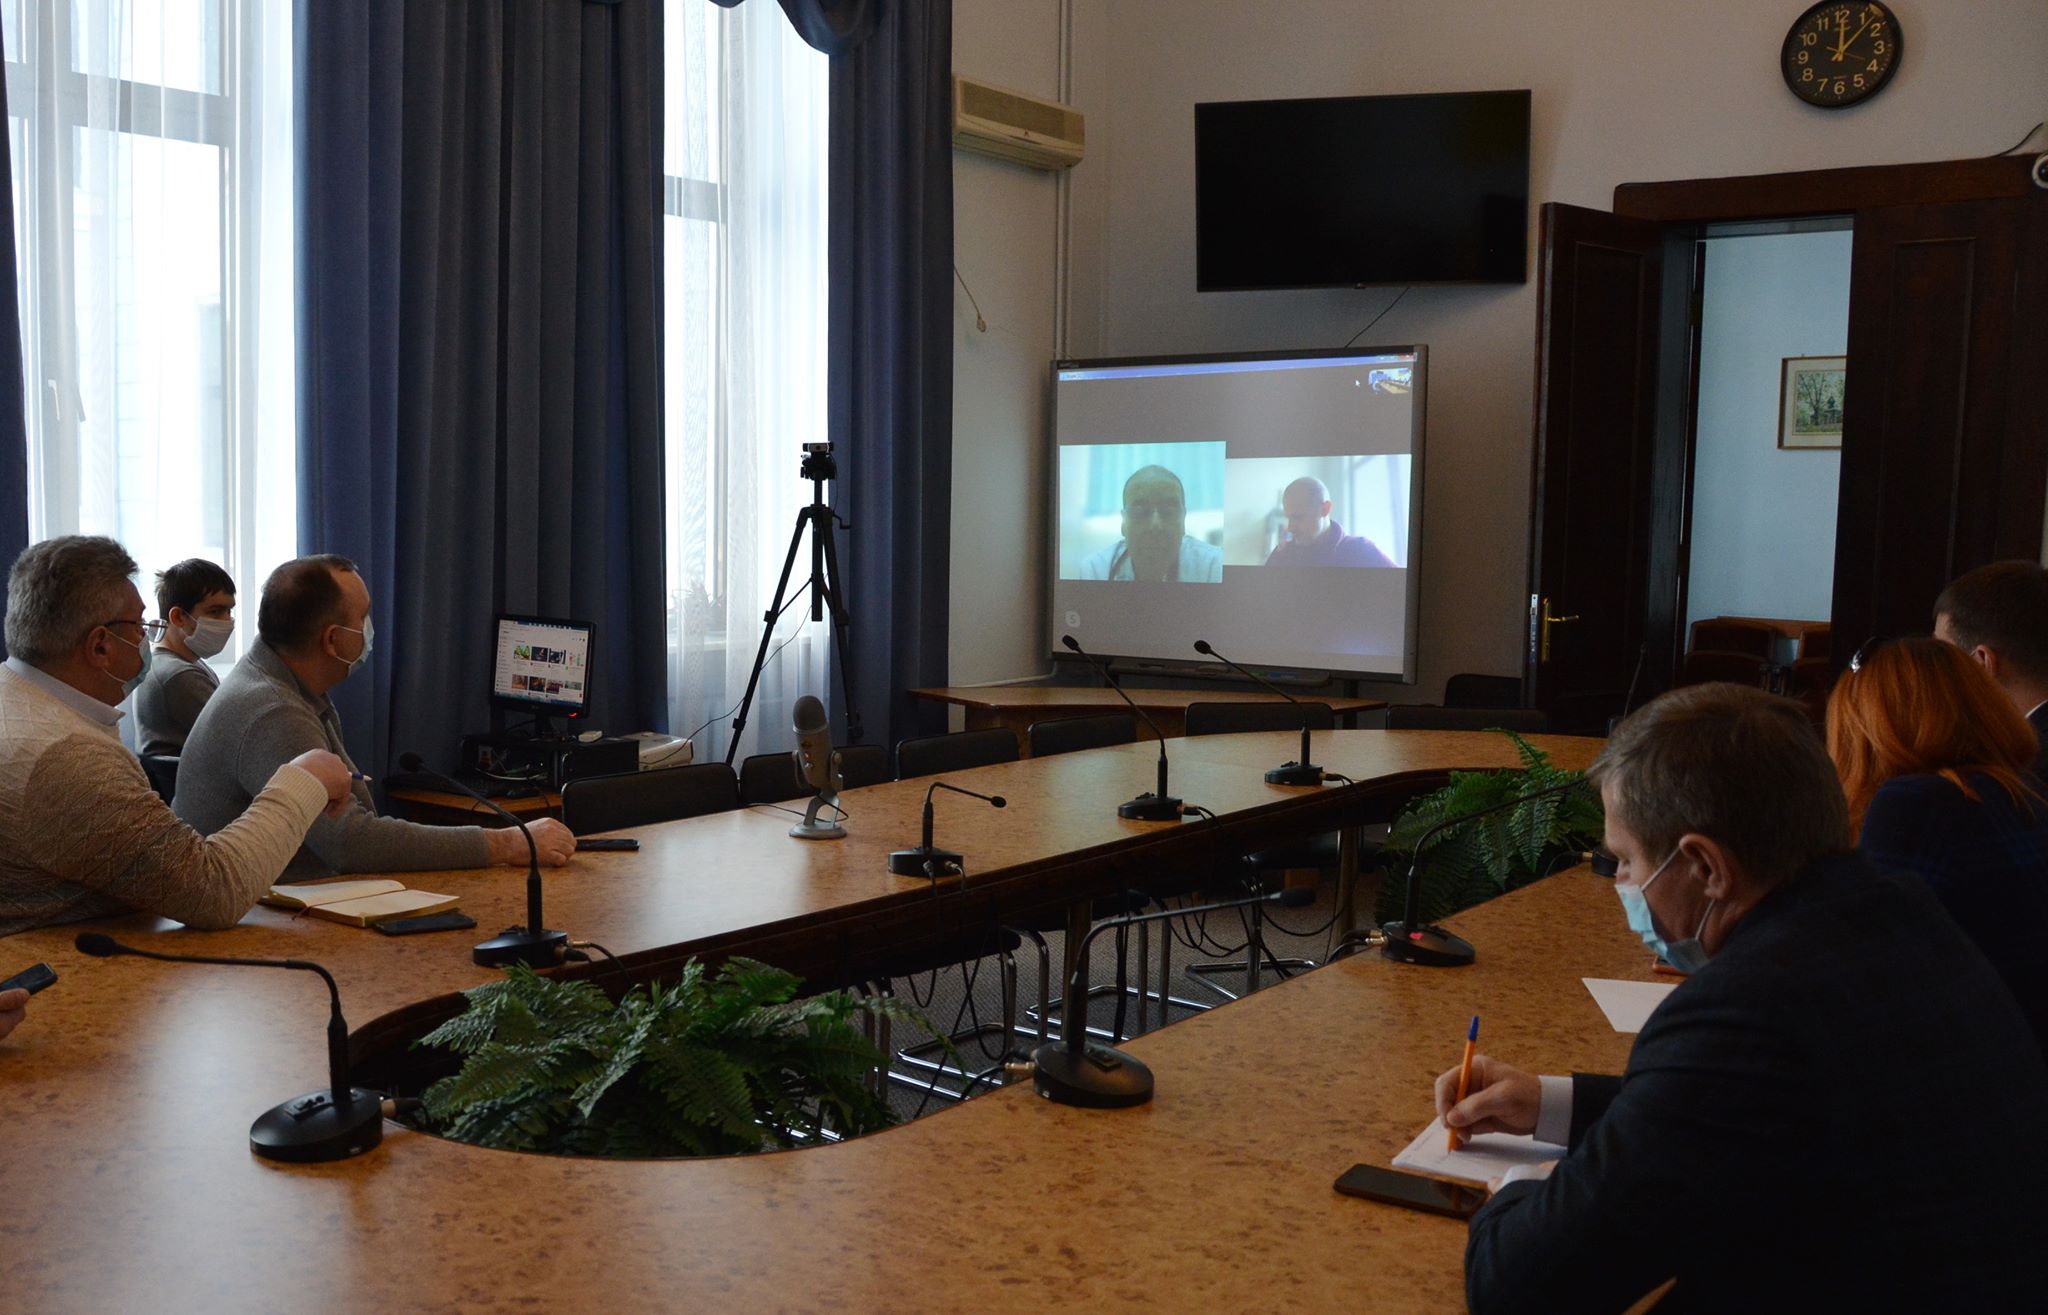 Румунський лікар під час відеоконференції розповів чернівецьким колегам, як лікувати коронавірус